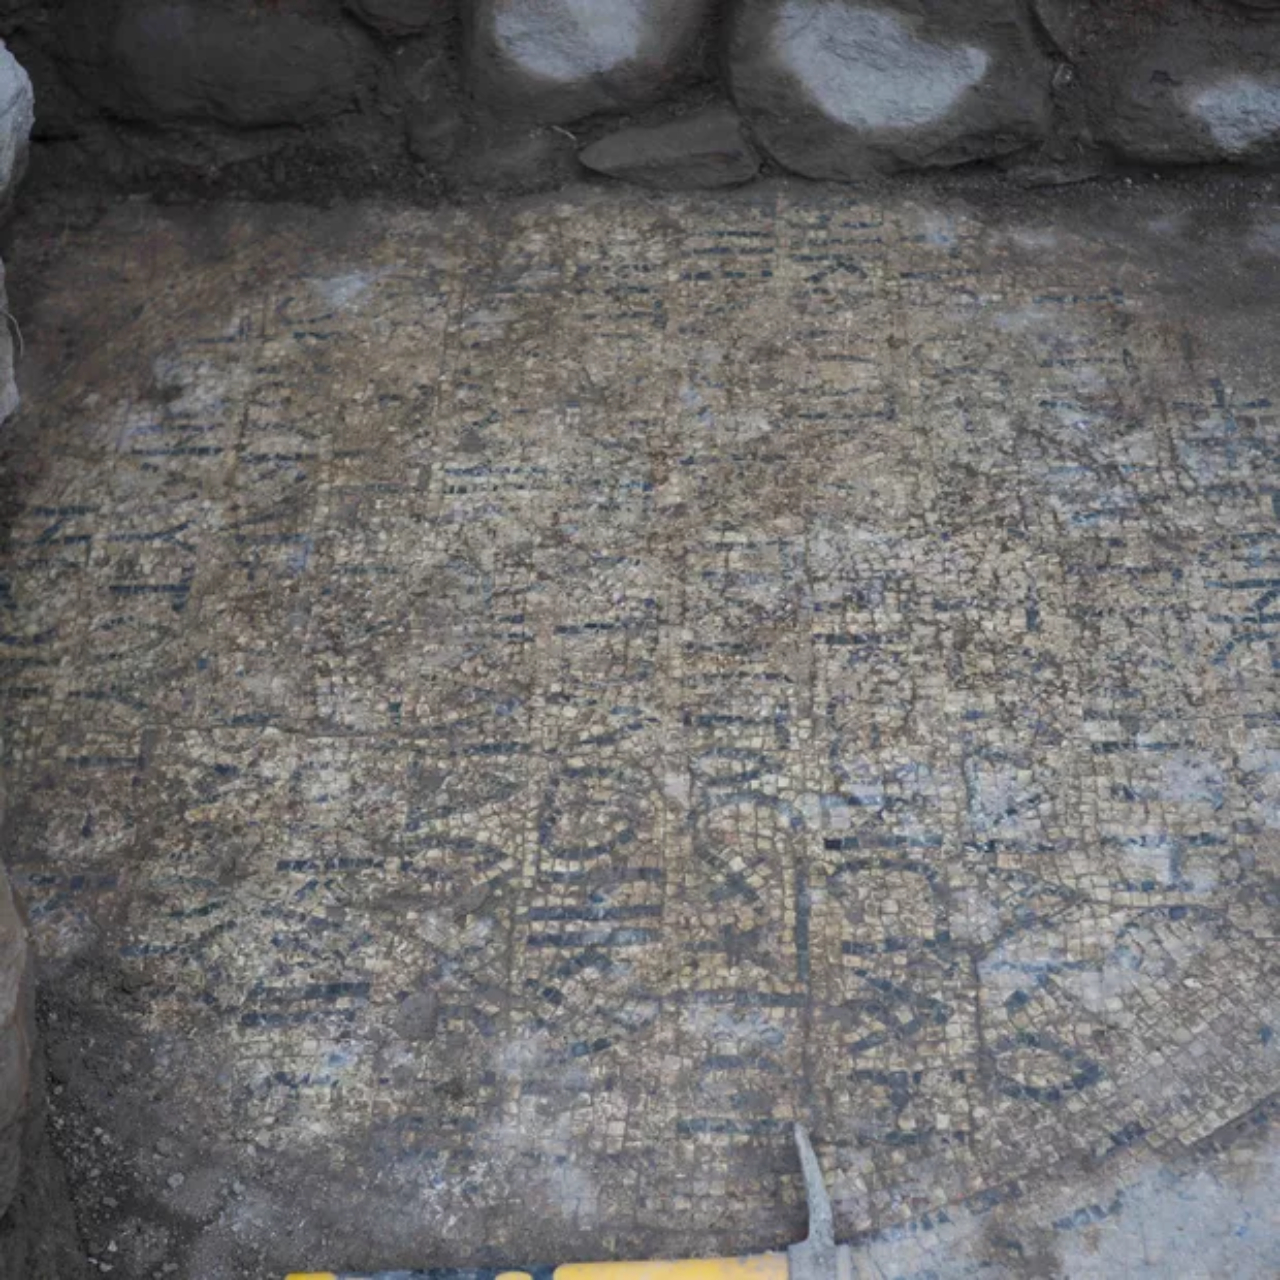 Escrito em grego completo, encontrado em basílica do Período Bizantino